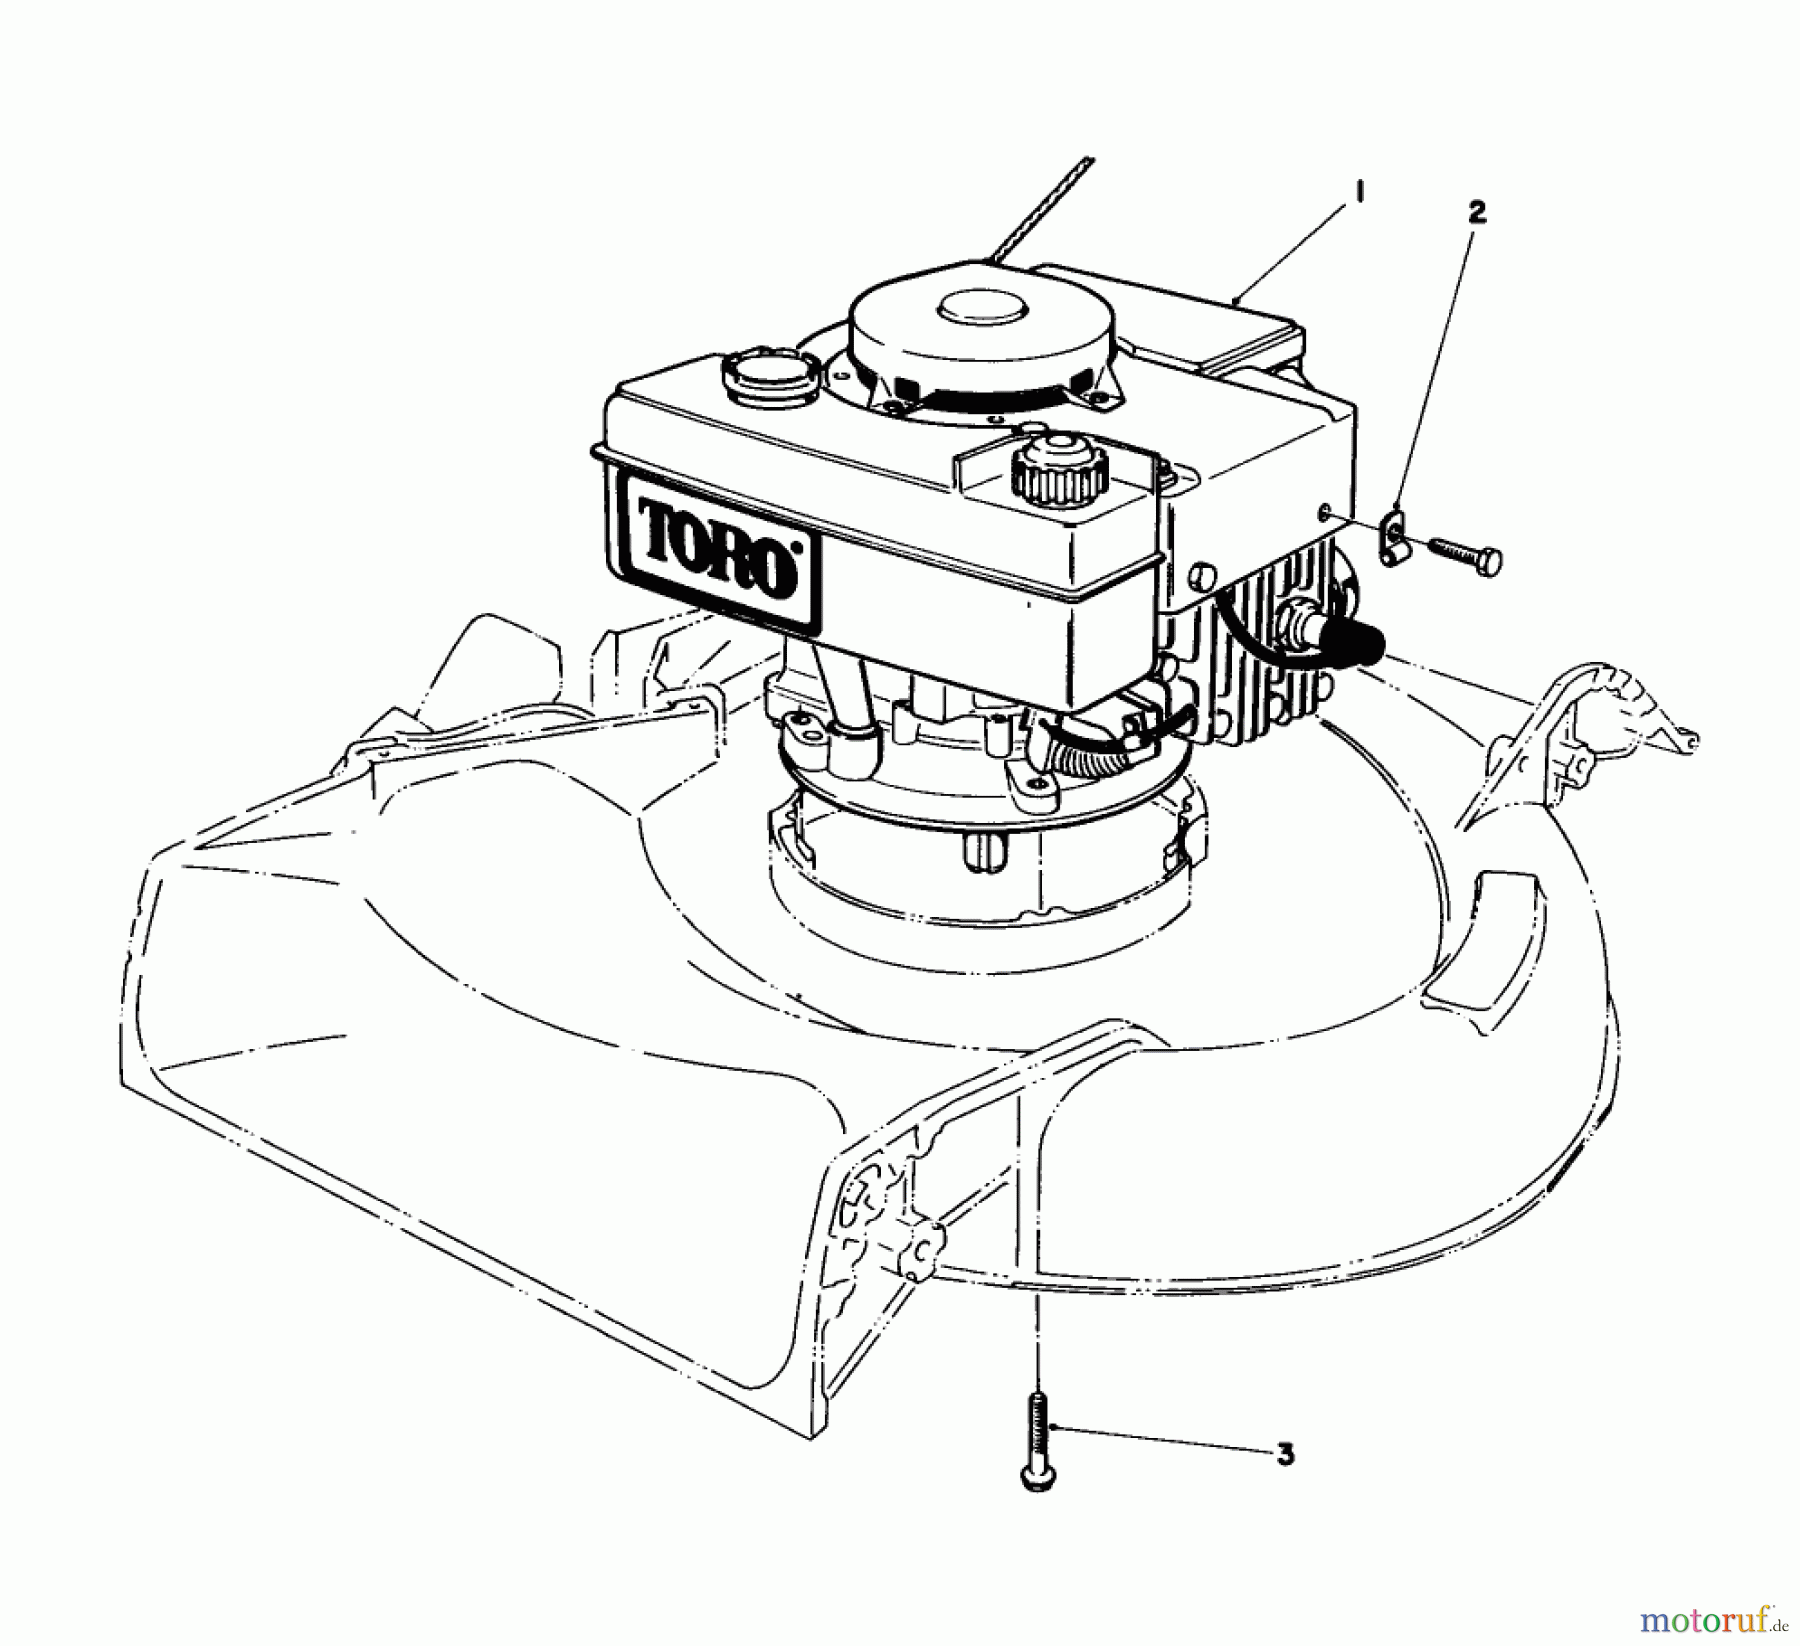  Toro Neu Mowers, Walk-Behind Seite 1 16575 - Toro Lawnmower, 1986 (6000001-6999999) ENGINE ASSEMBLY